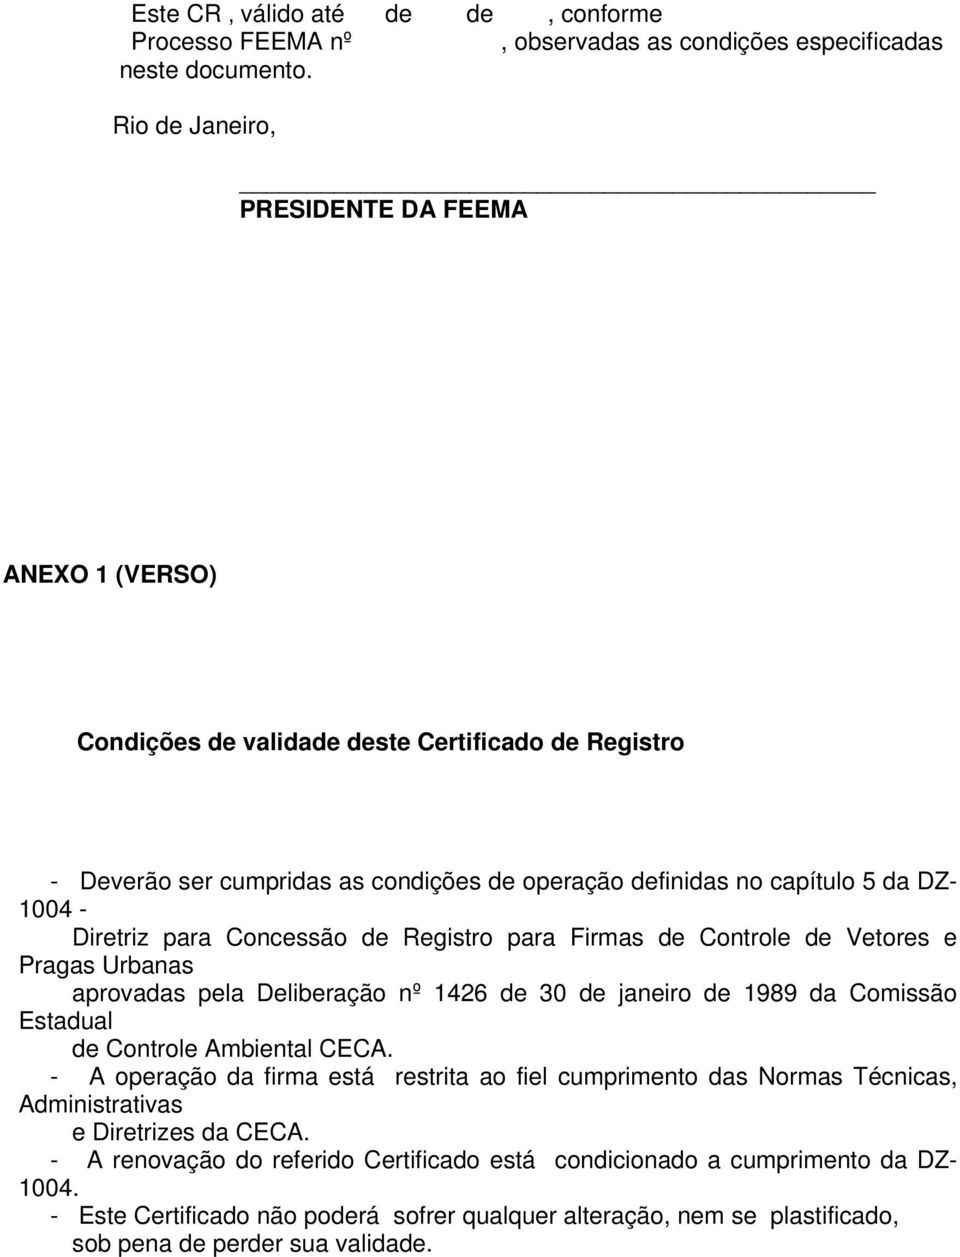 para Concessão de Registro para Firmas de Controle de Vetores e Pragas Urbanas aprovadas pela Deliberação nº 1426 de 30 de janeiro de 1989 da Comissão Estadual de Controle Ambiental CECA.